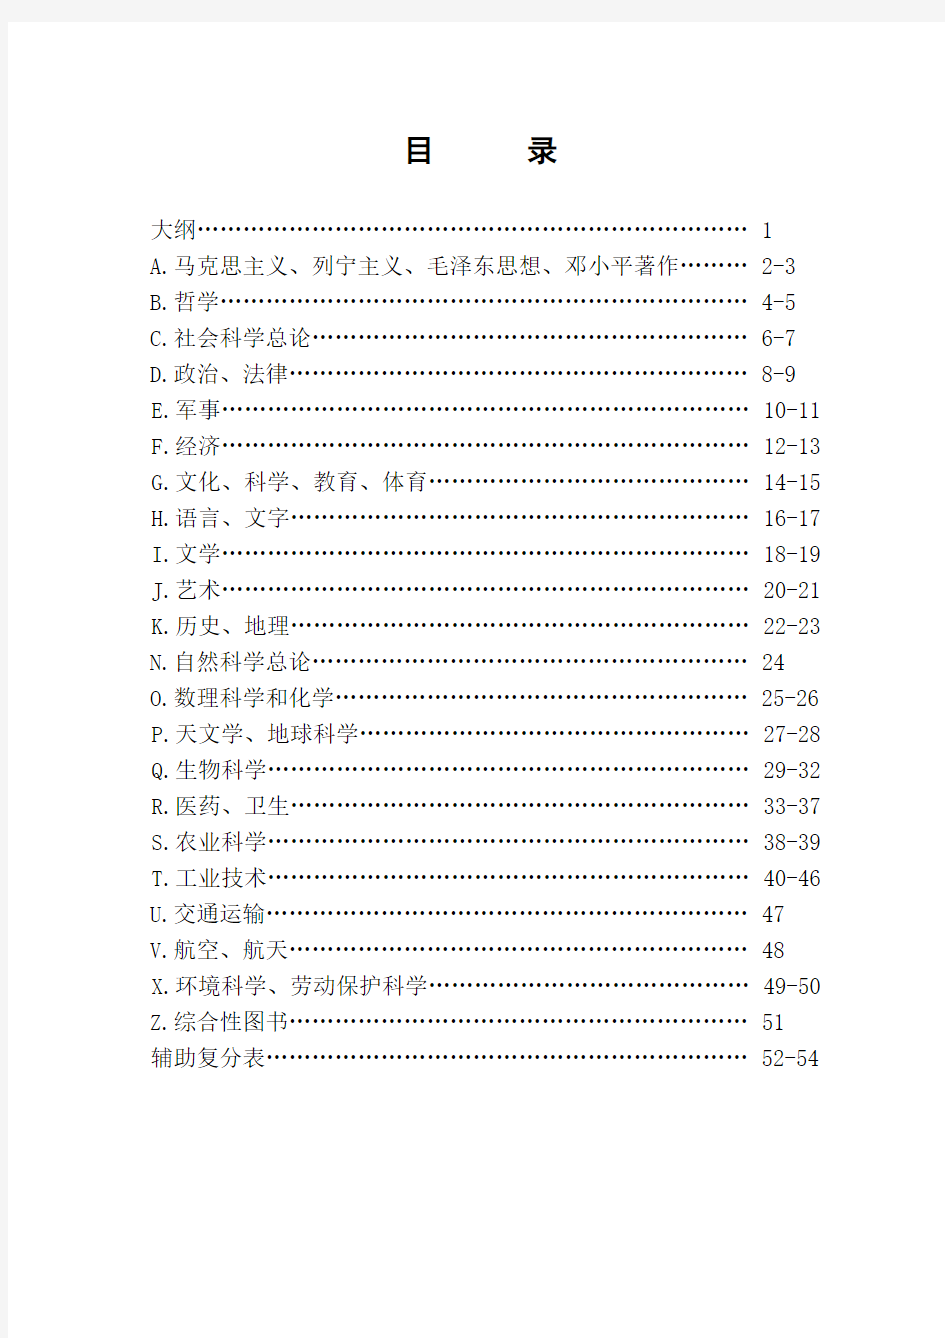 中国图书馆图书分类法三级类目分类体系